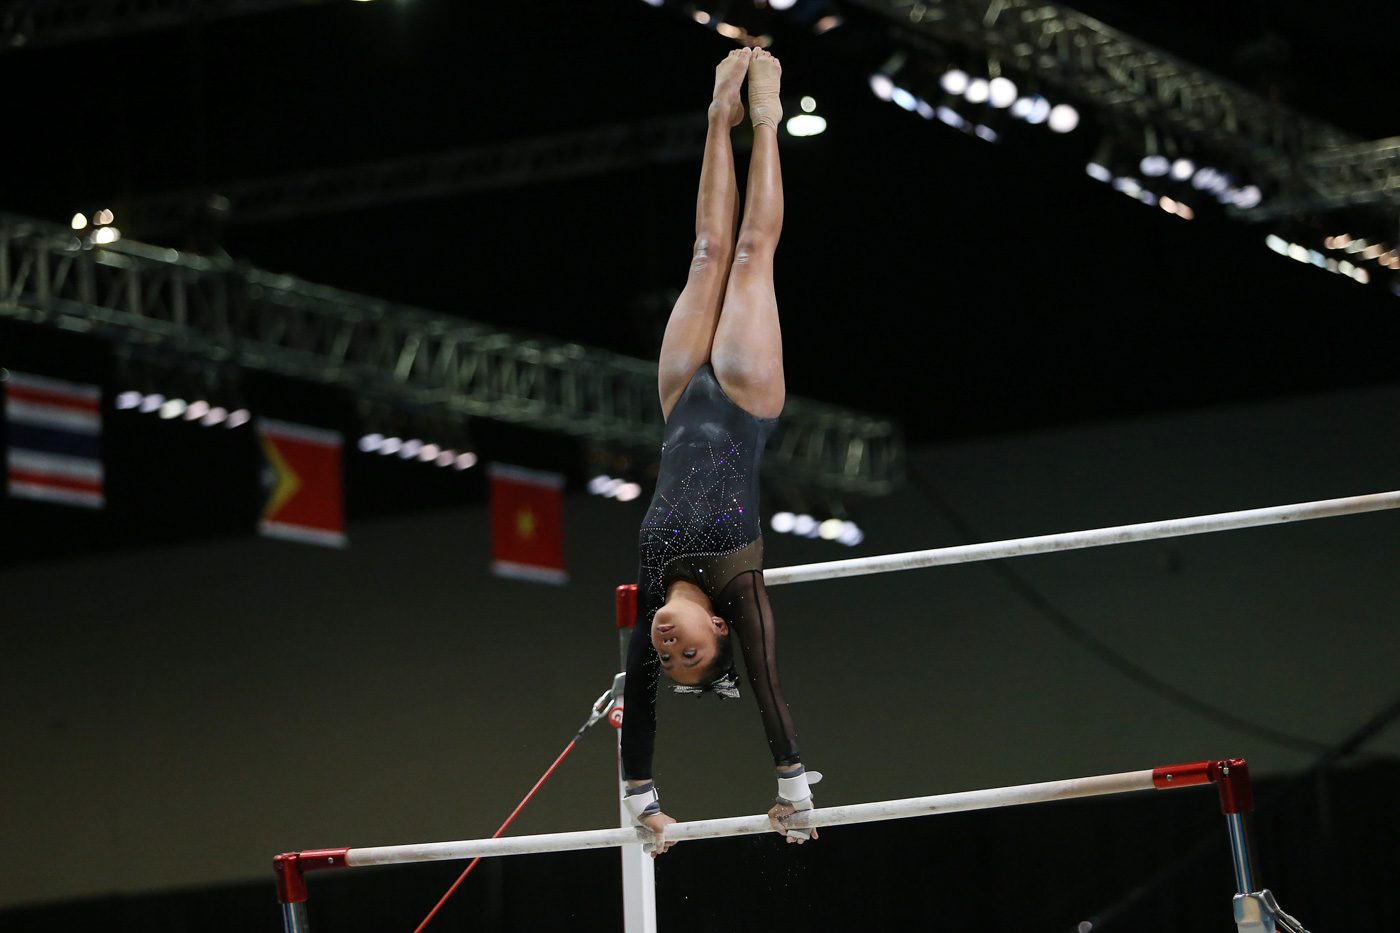 De Guzman, aged 17, grabs artistic gymnastics gold in 2017 SEA Games